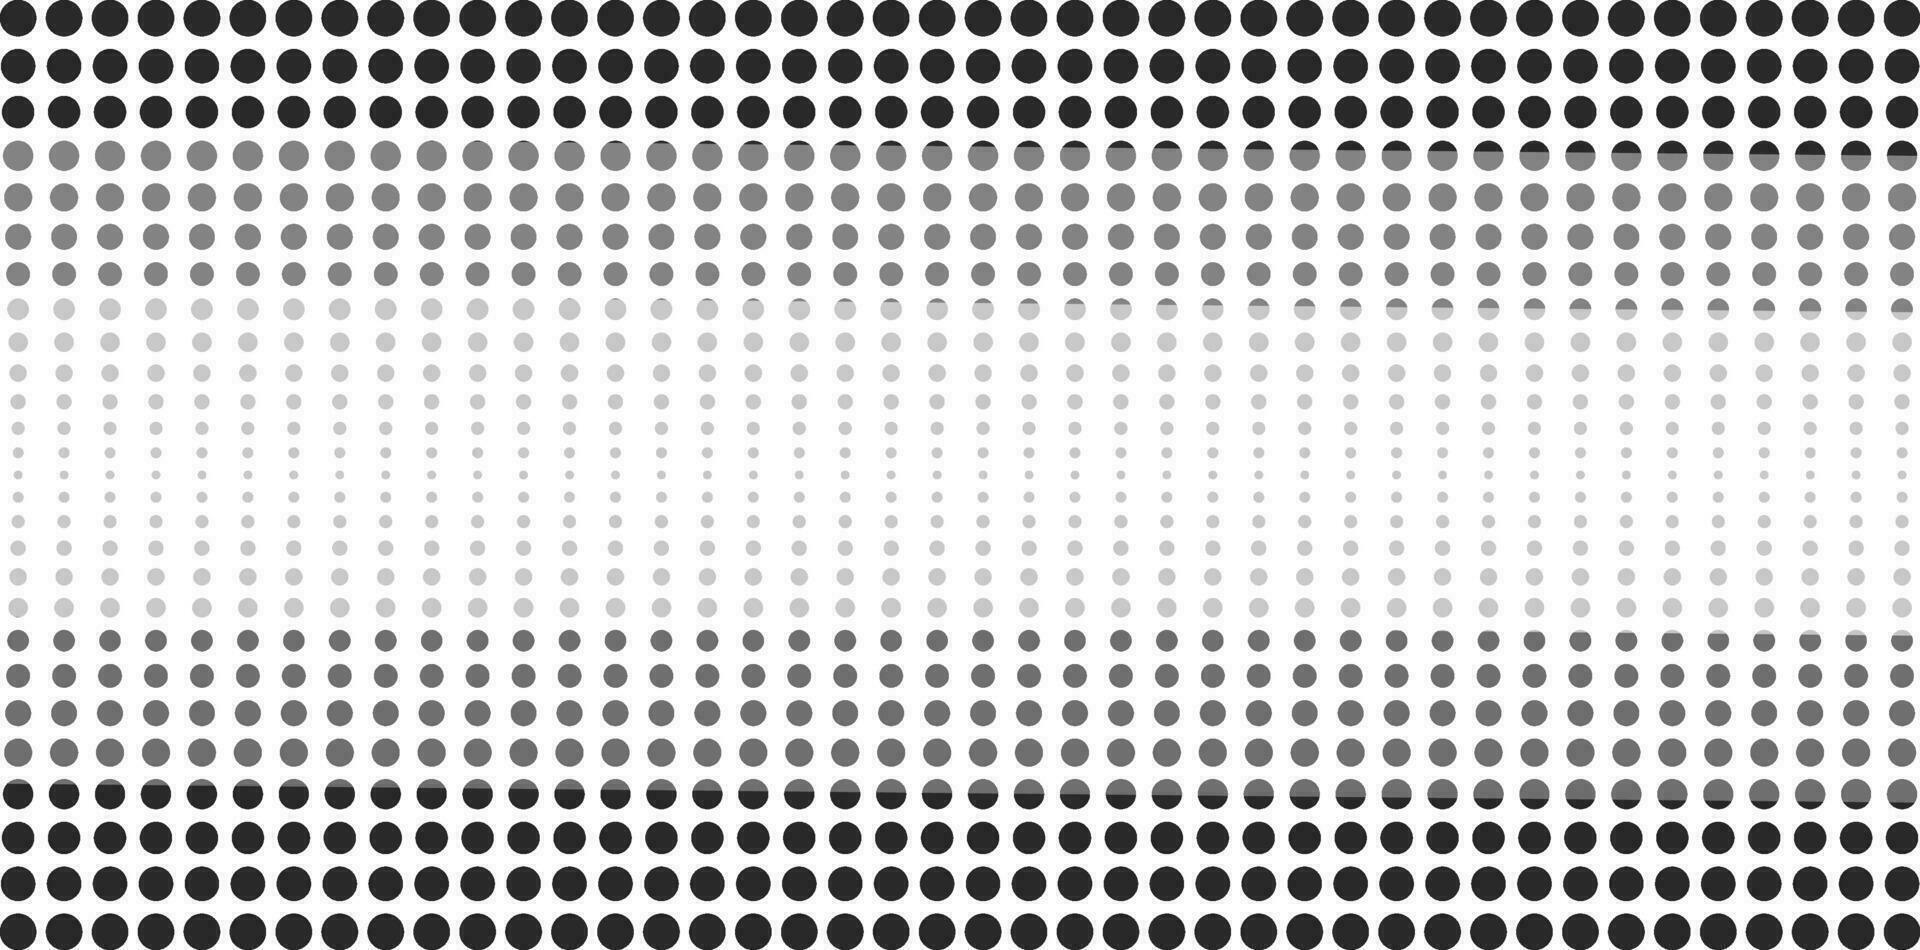 abstrakt halvton prickad baner. svartvit mönster punkt cirklar etiketter klistermärken vektor